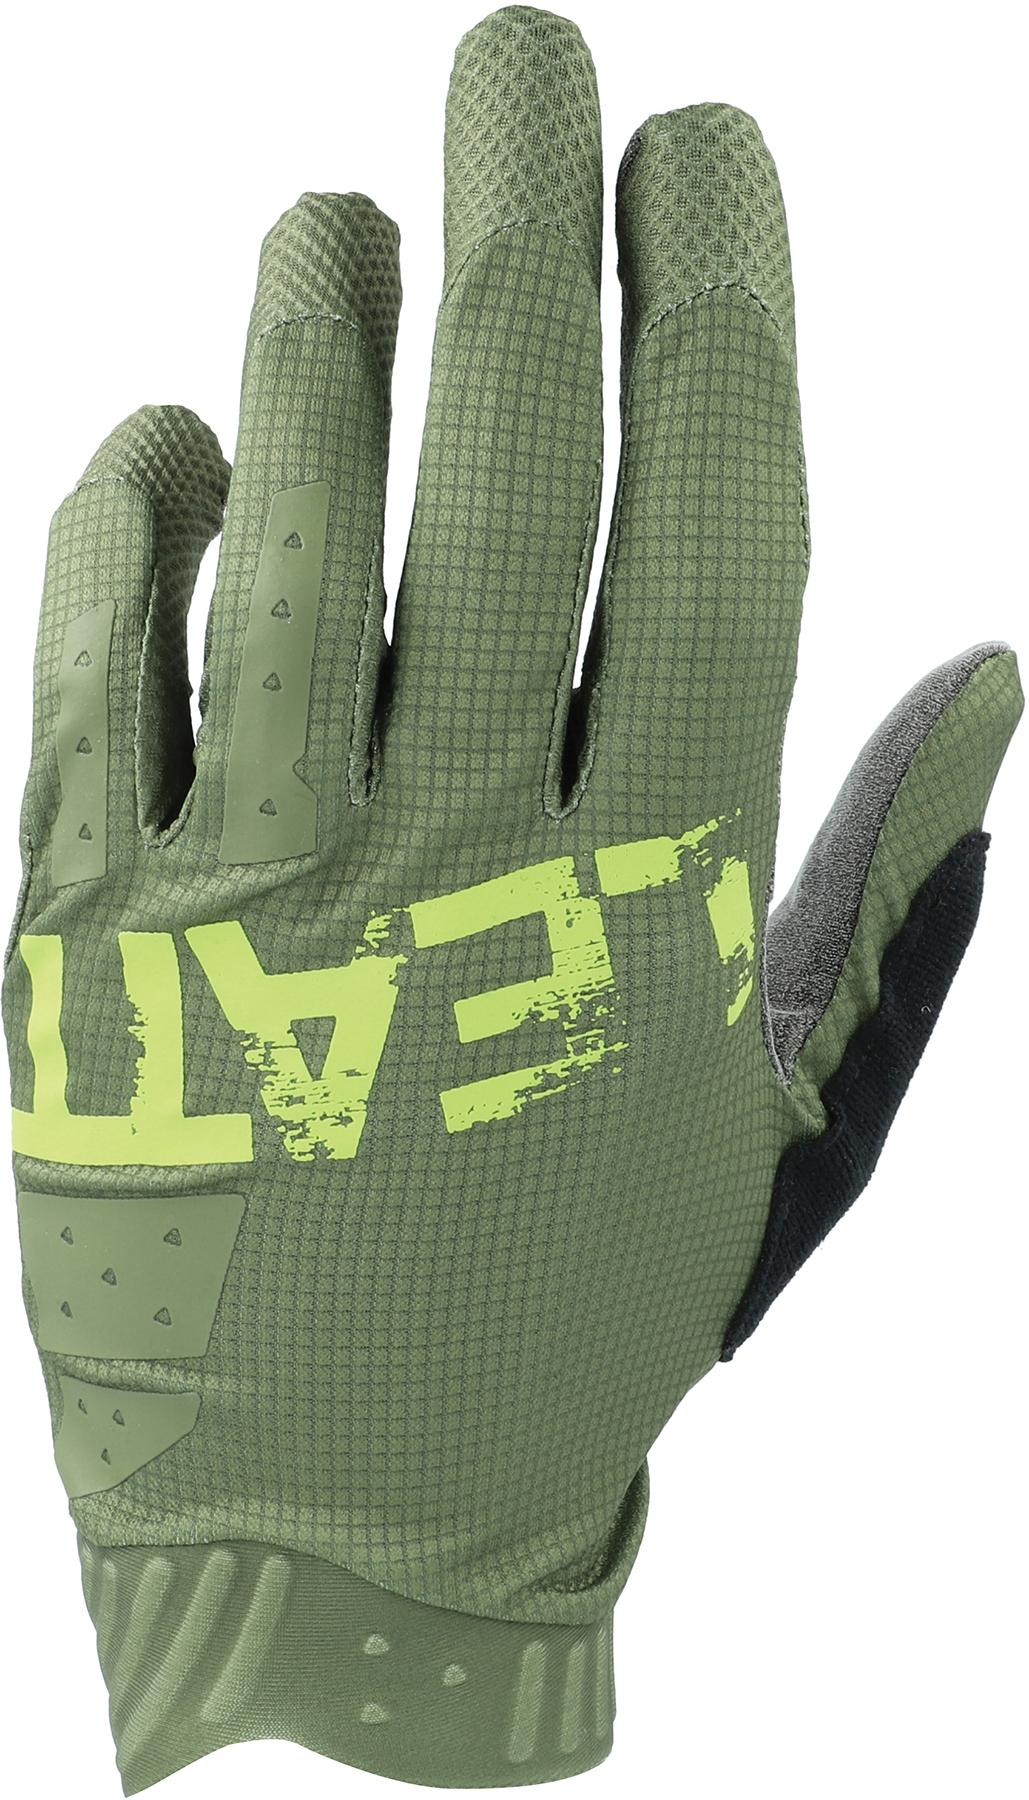 Leatt Mtb 1.0 Gloves - Cactus